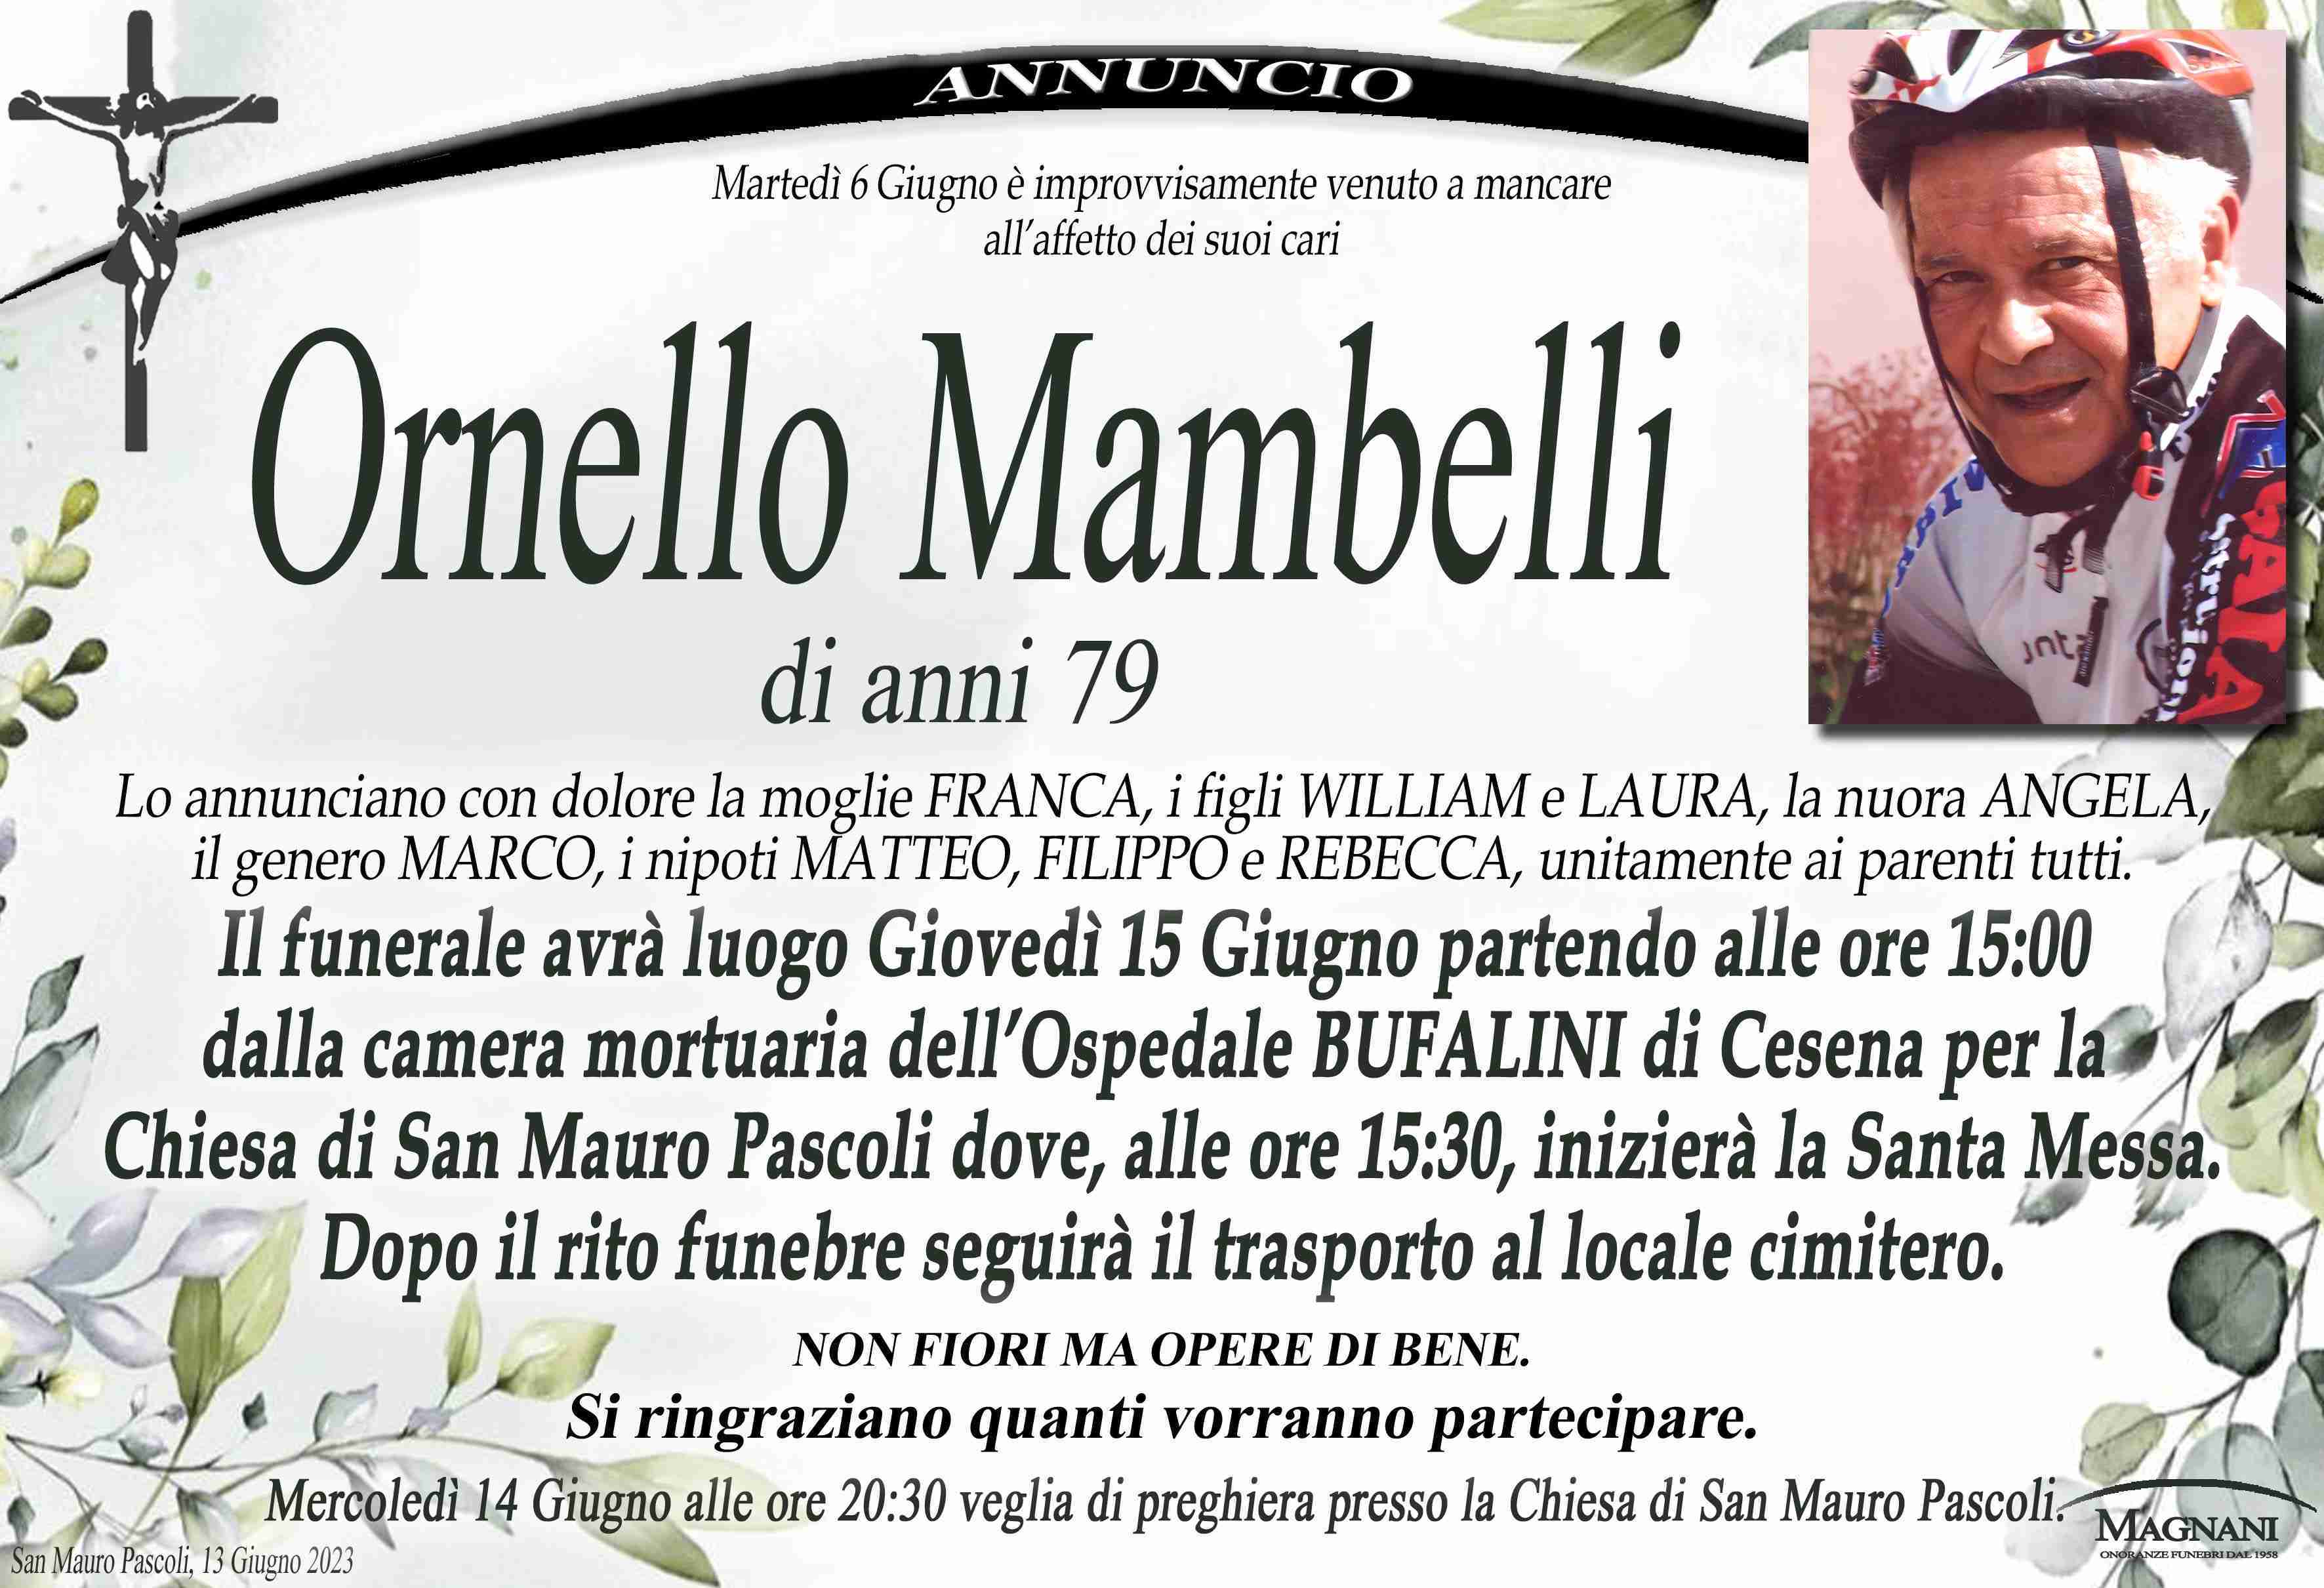 Ornello Mambelli